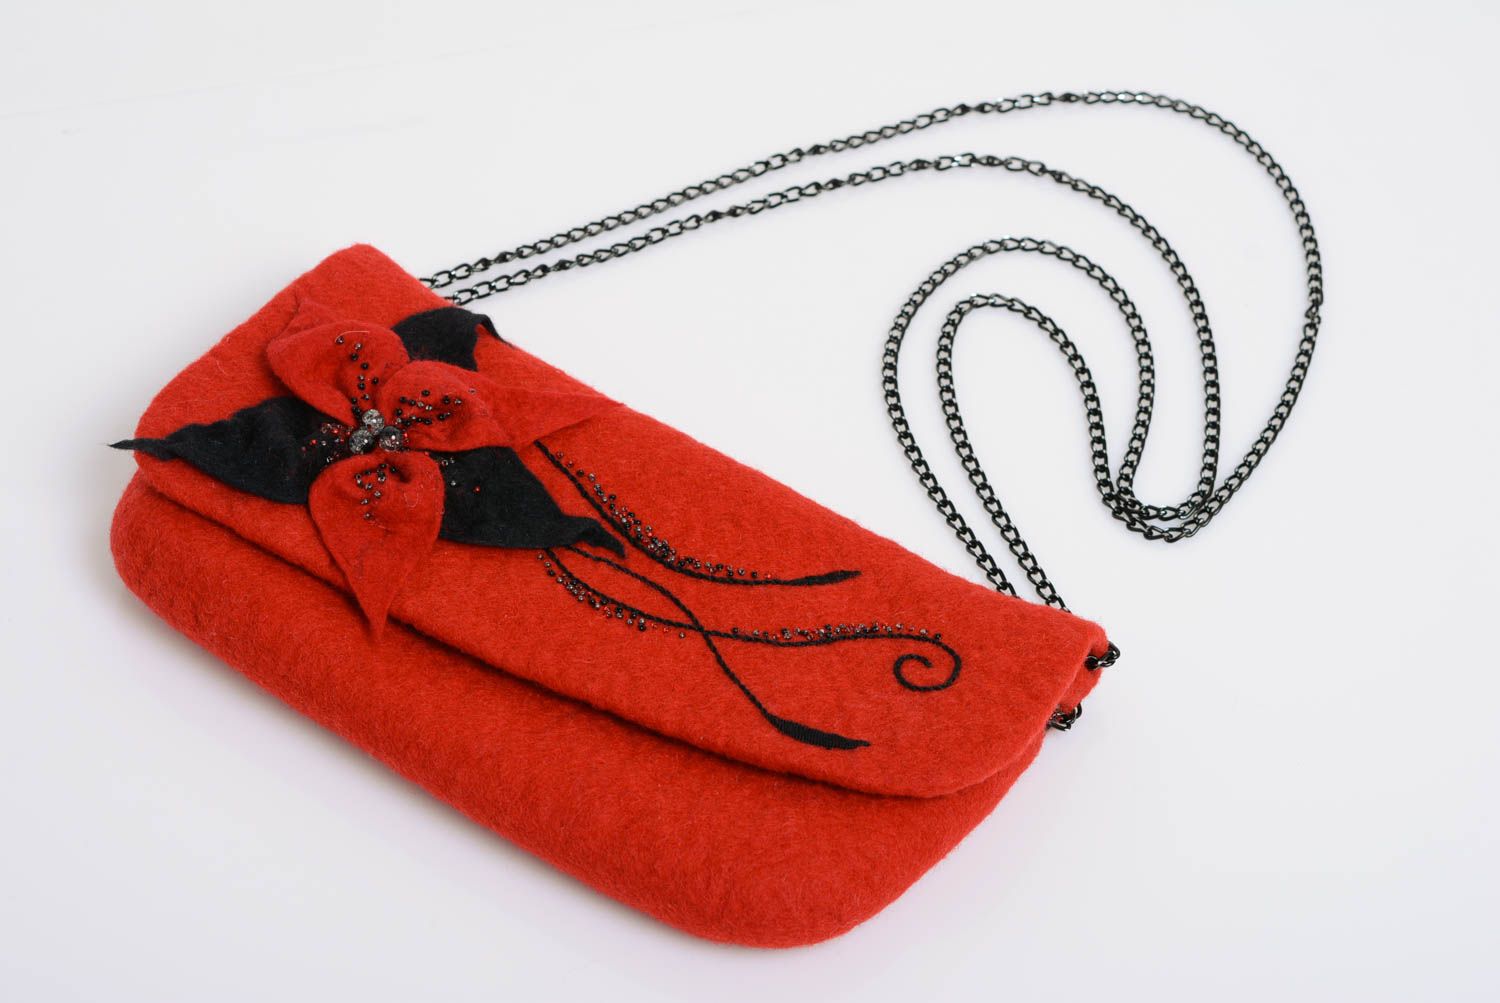 Sac pochette en laine feutrée rouge fait main original sur chaîne métallique photo 1